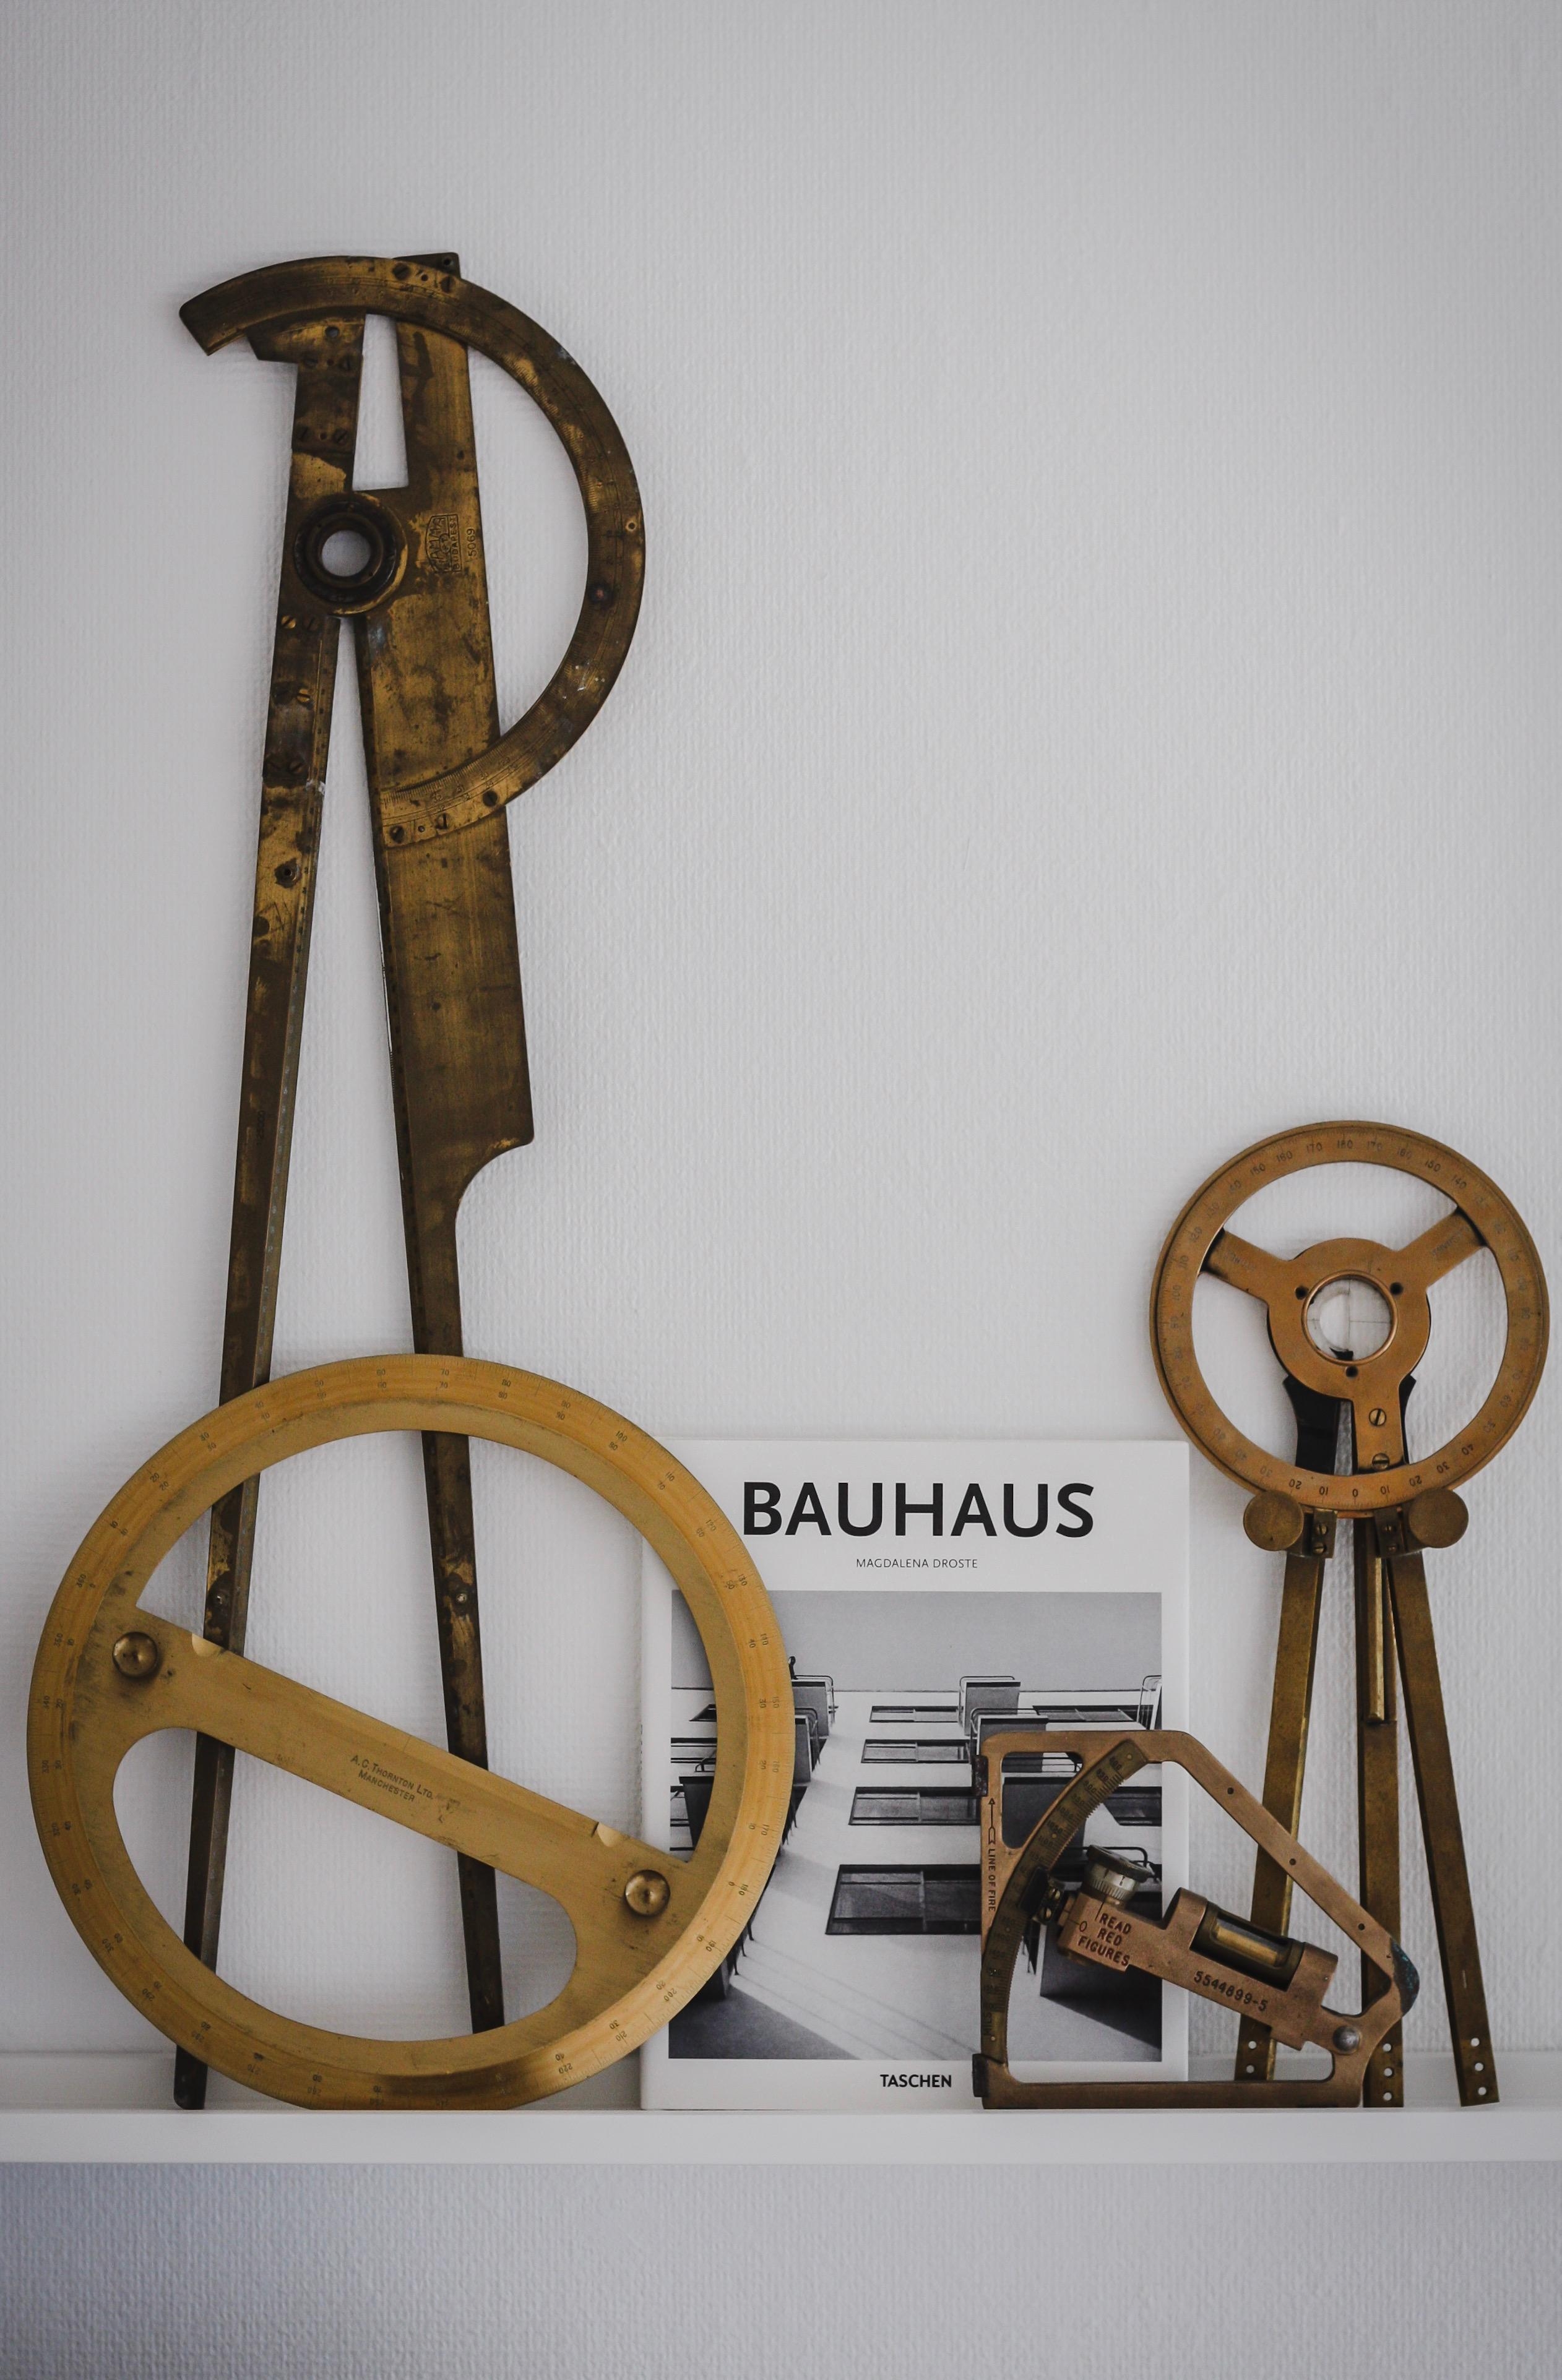 Meine Sammlung von alten Zeicheninstrumente #messing #zeichnung #bauhaus #architektur #zeicheninstrumente #regal